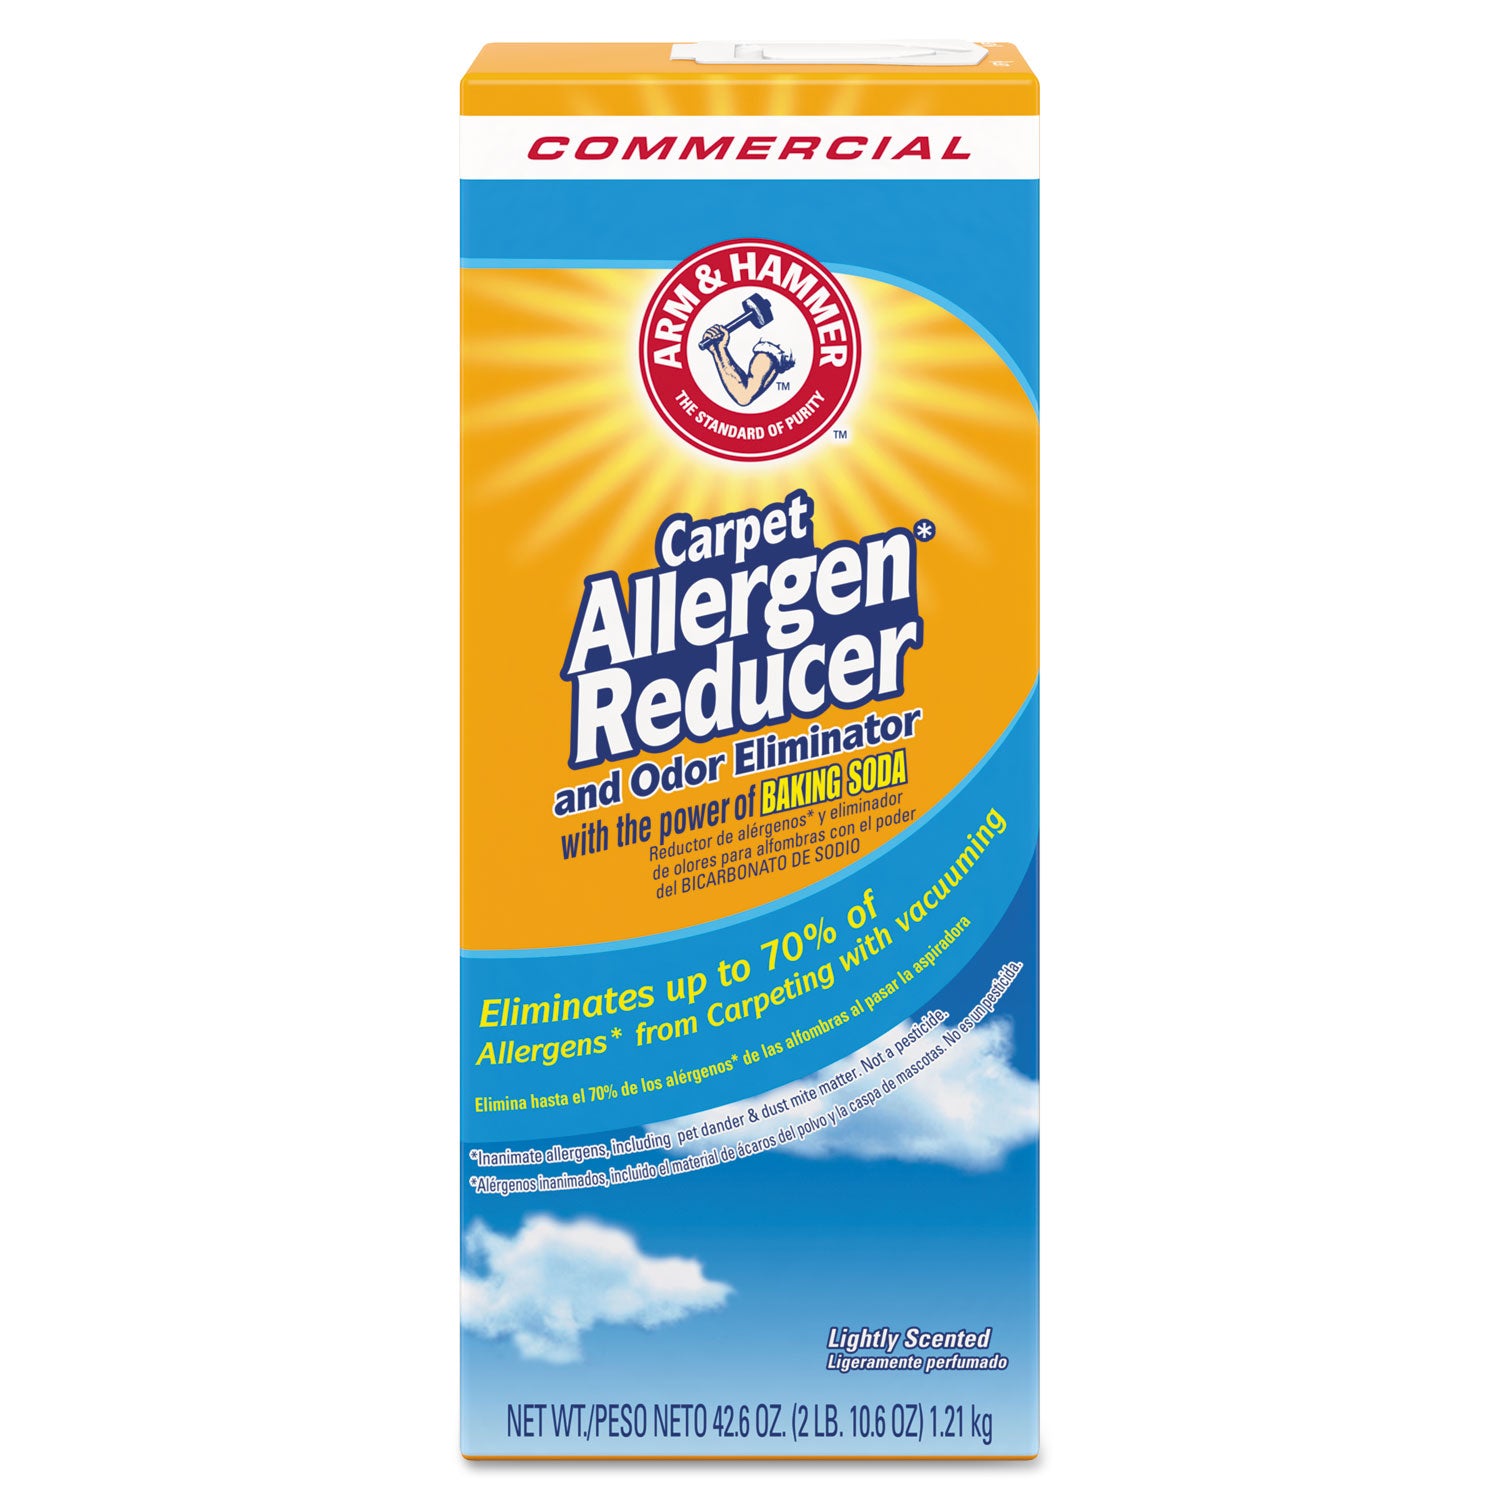 Carpet and Room Allergen Reducer and Odor Eliminator, 42.6 oz Shaker Box - 